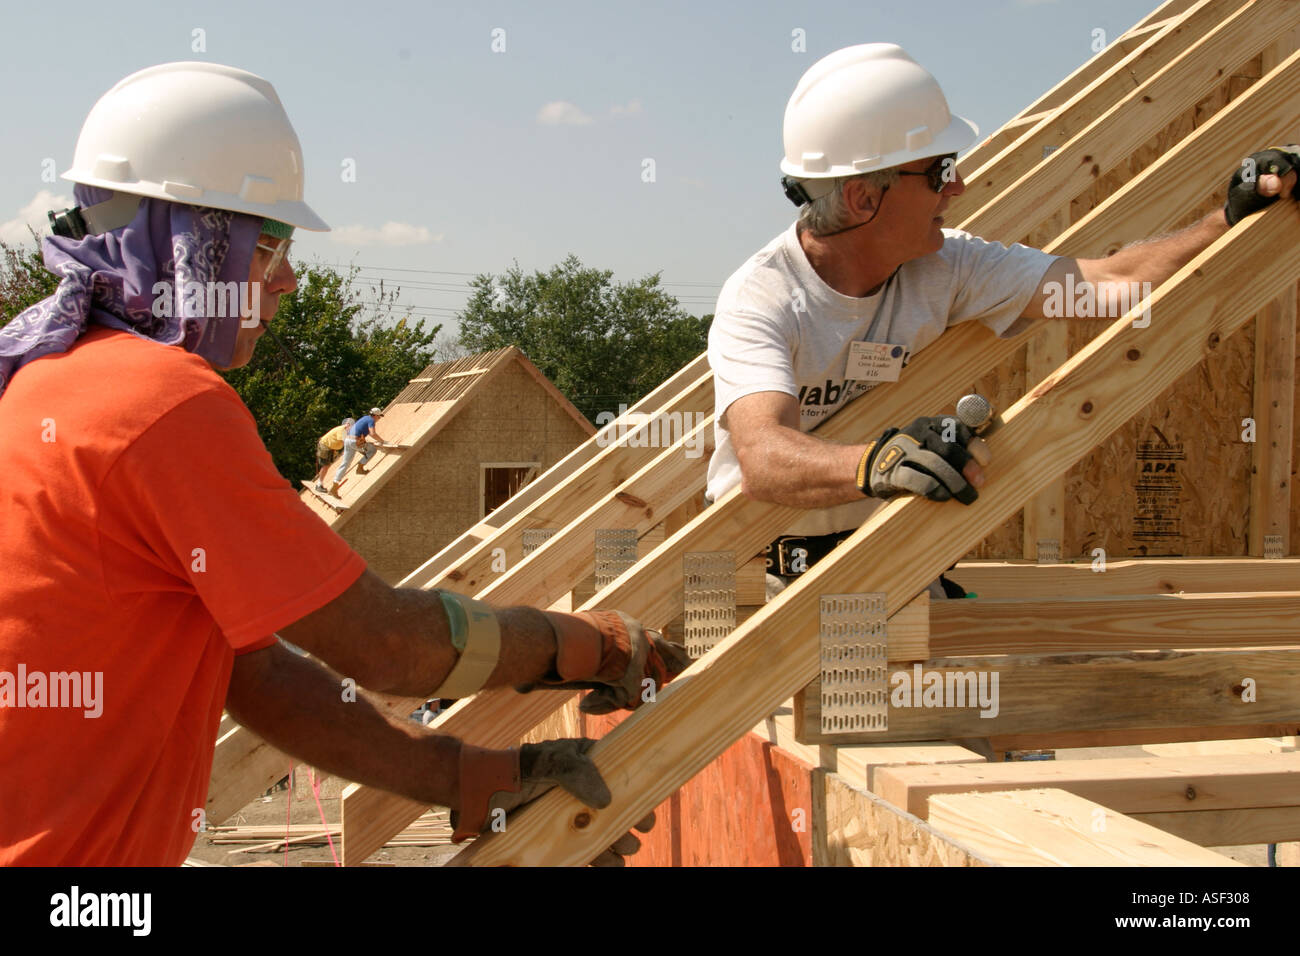 Des bénévoles aident à construire maison pour famille à faible revenu grâce à Habitat pour l'humanité Banque D'Images